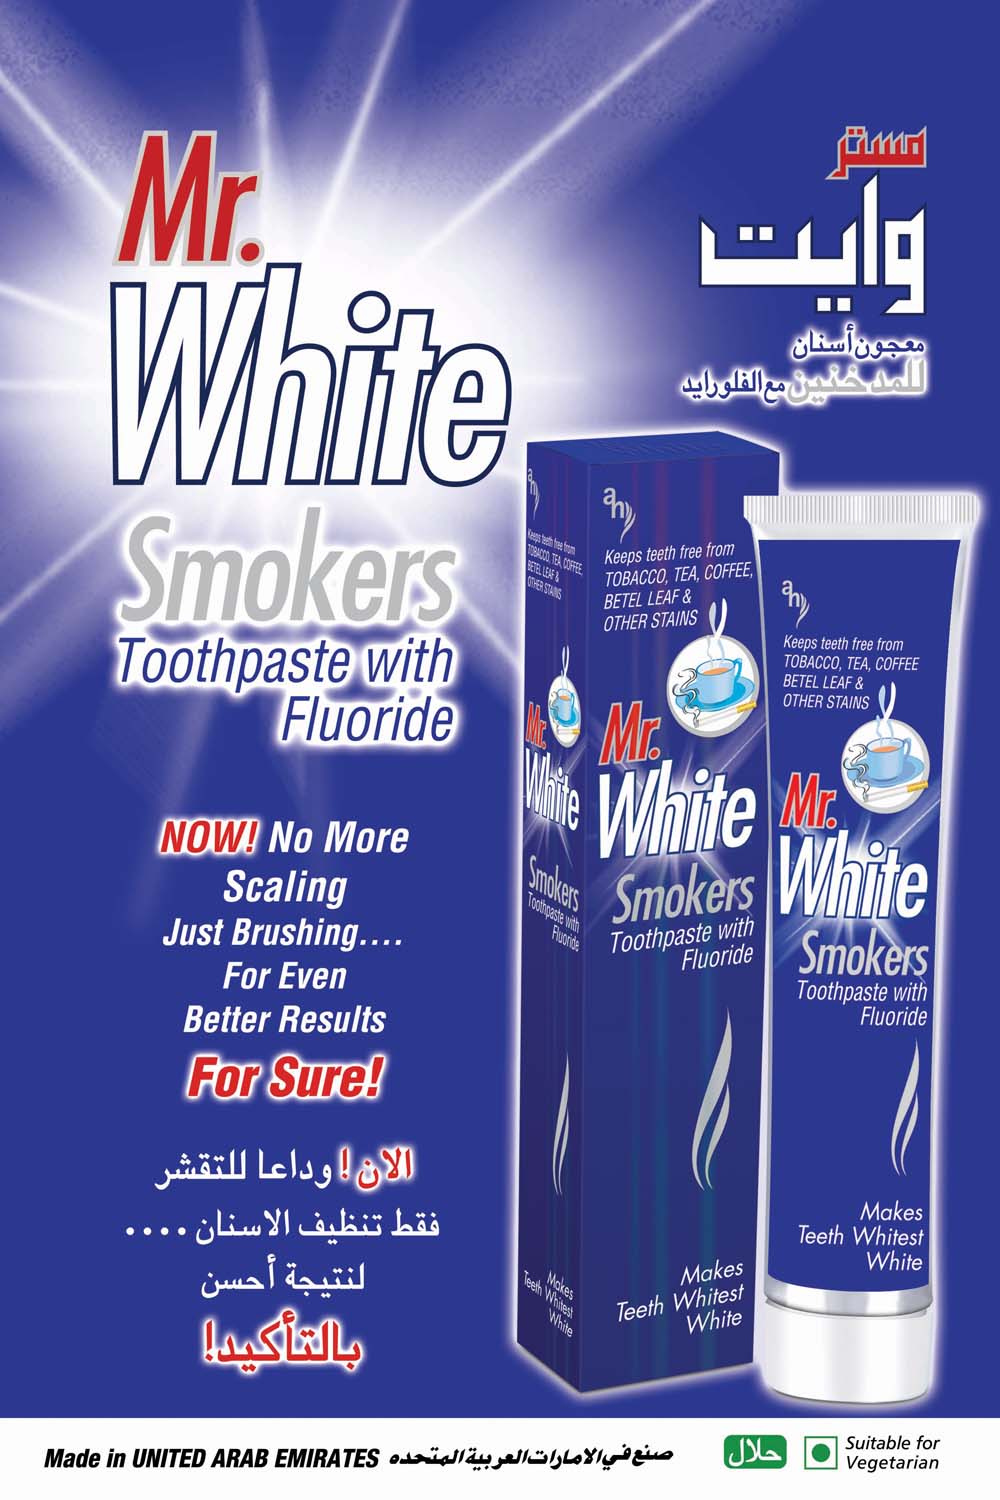 MR WHITE SMOKERS TOOTHPASTE